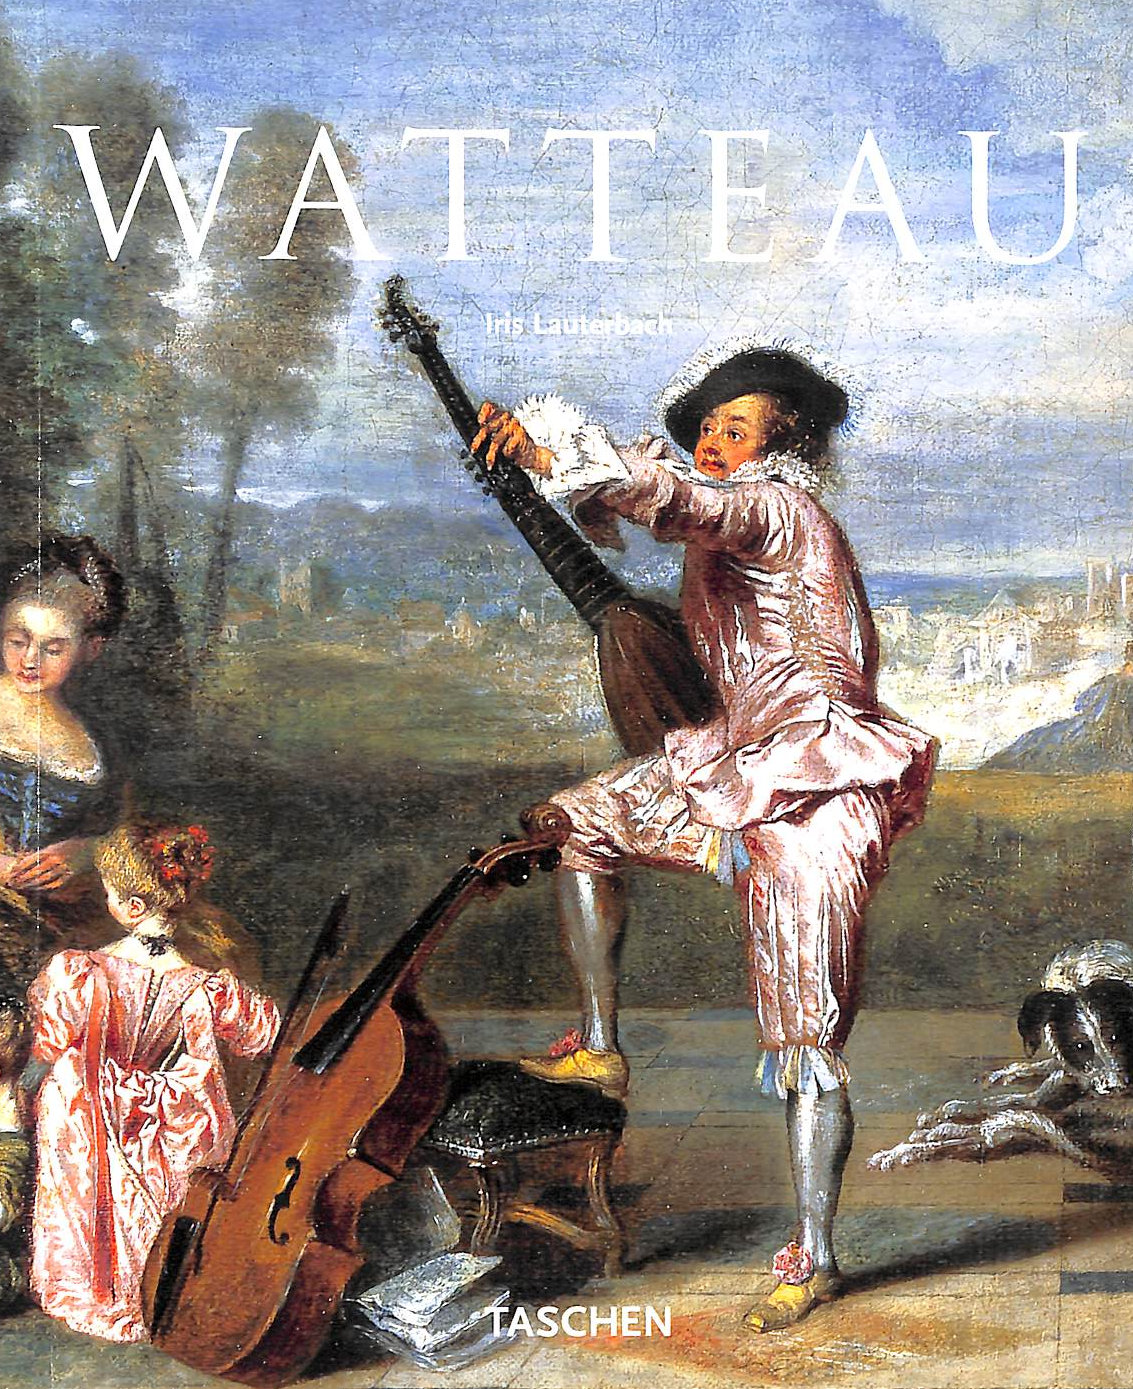 LAUTERBACH, IRIS - Watteau 1684-1721